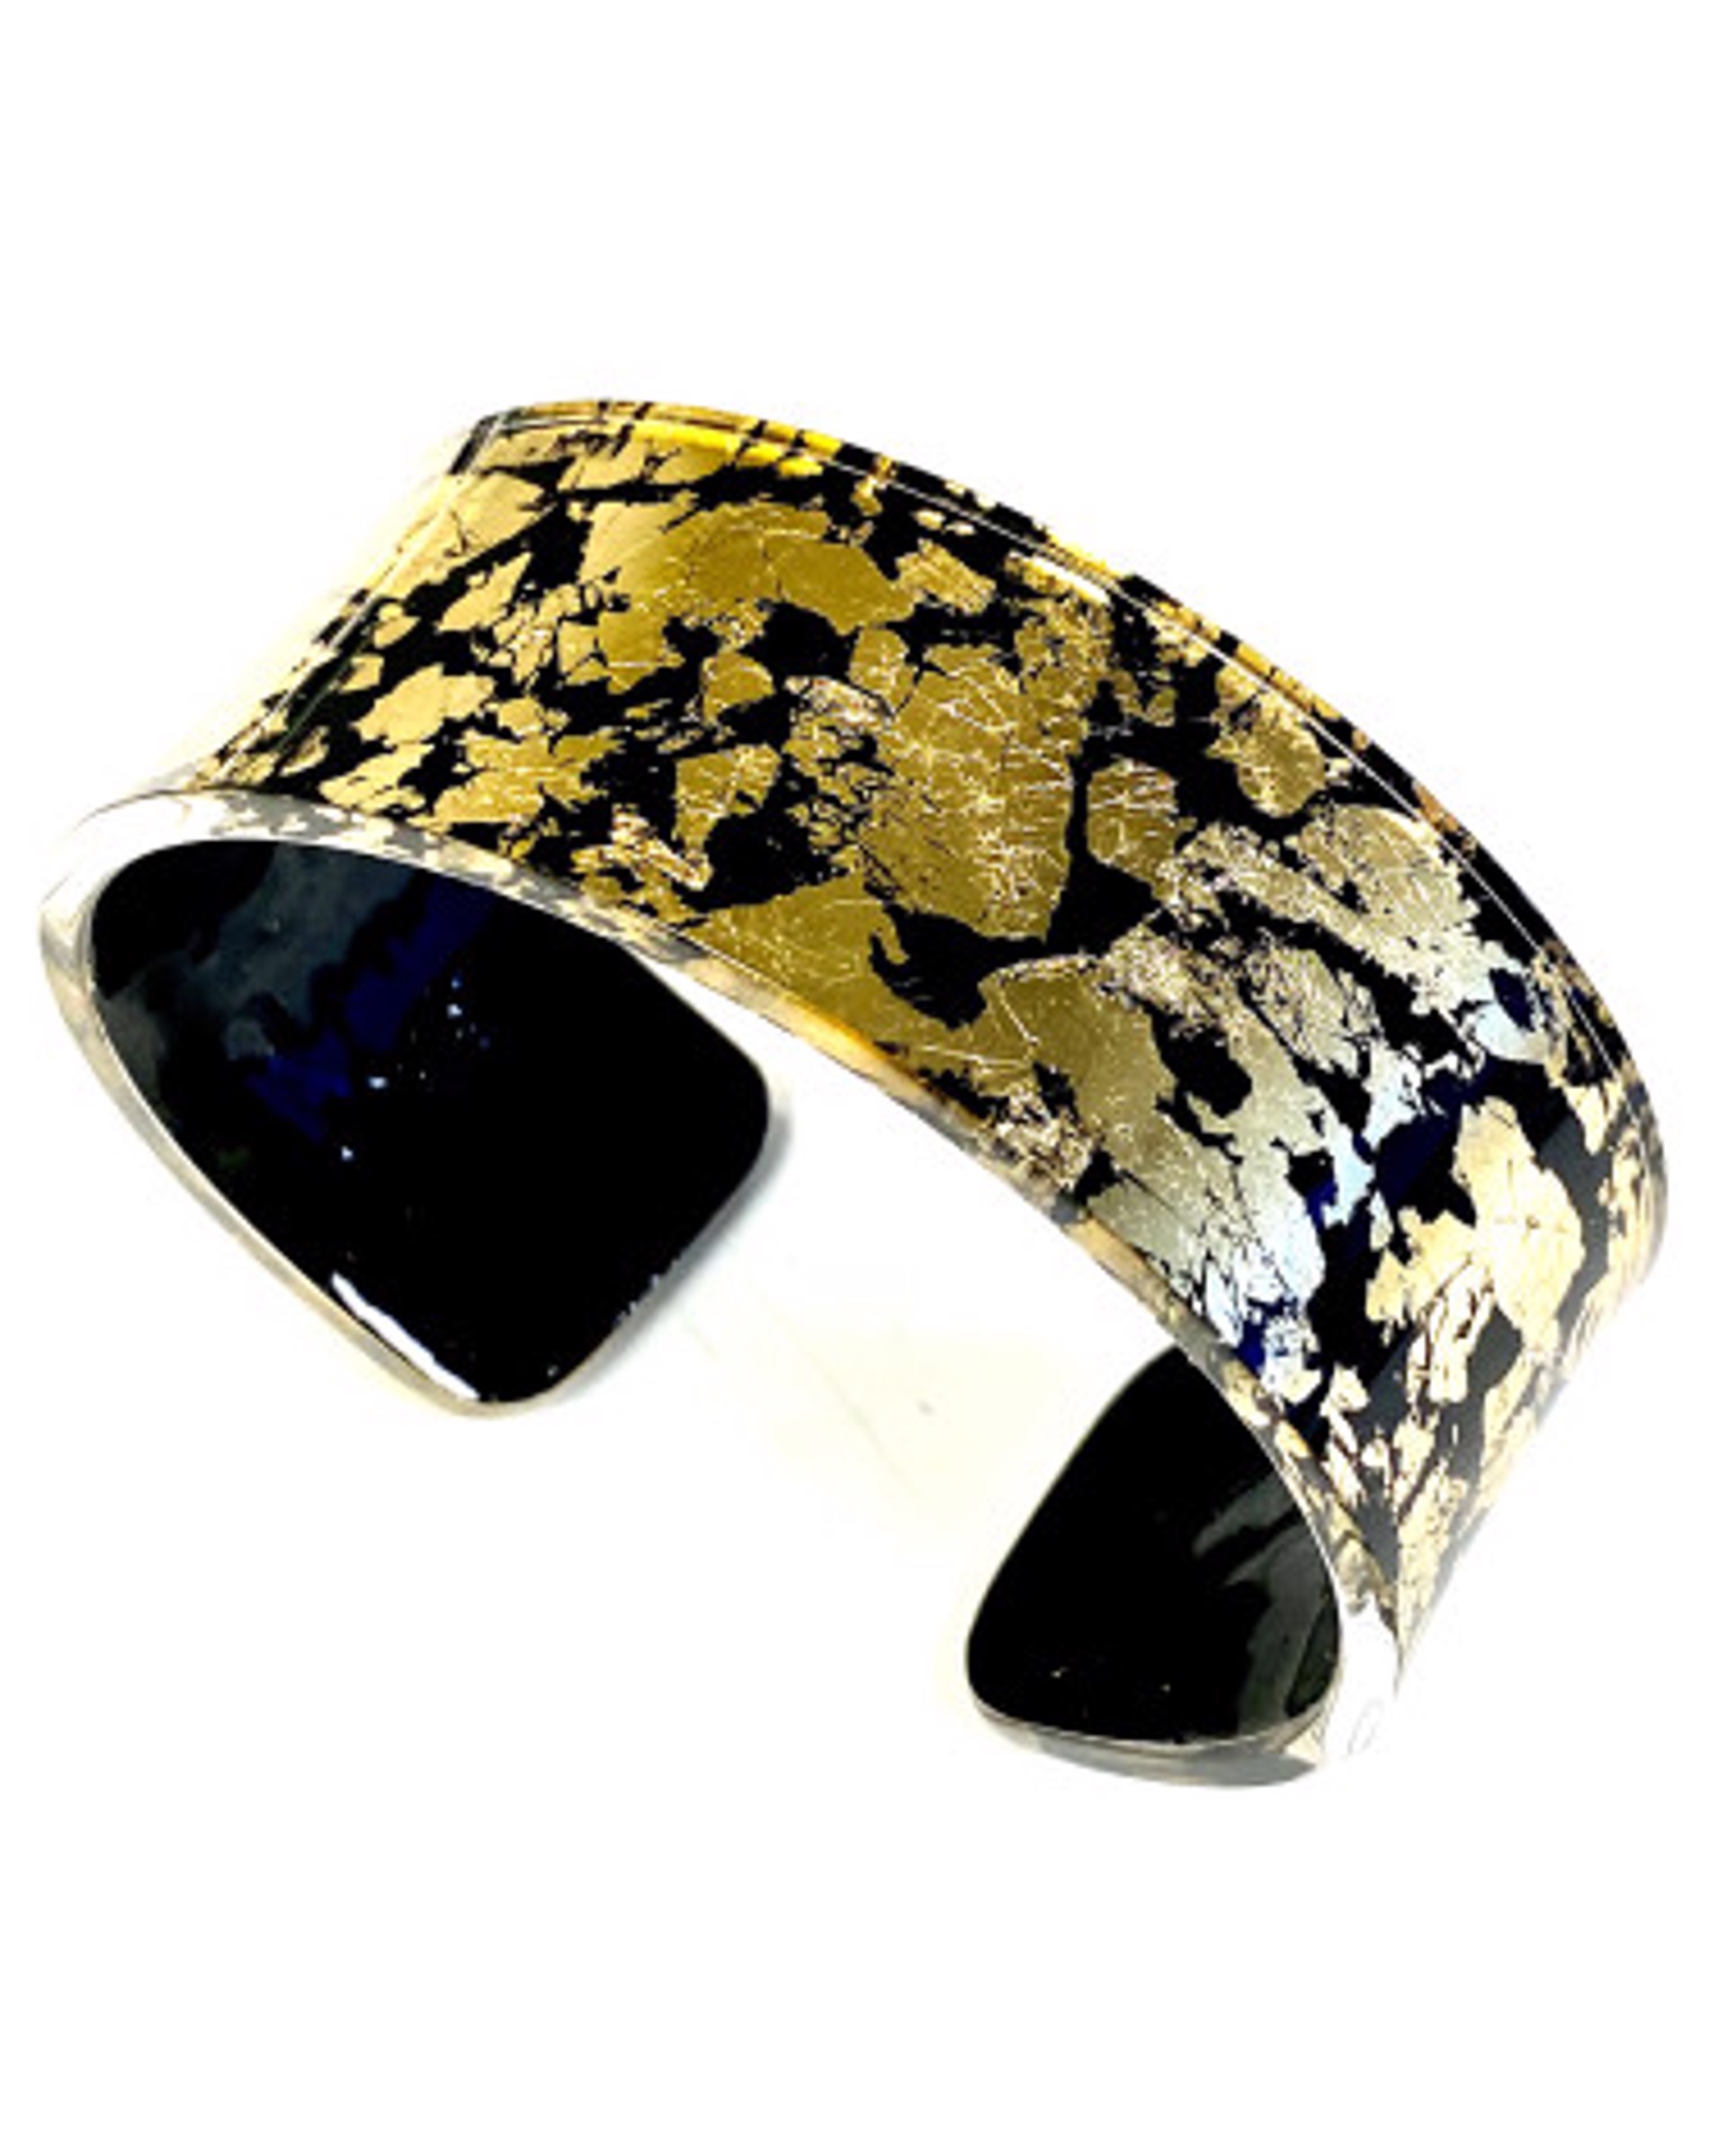 LG-Sm Cleopatre Bracelets Foil Infusion by Laurent Guillot Nikaia Inc.